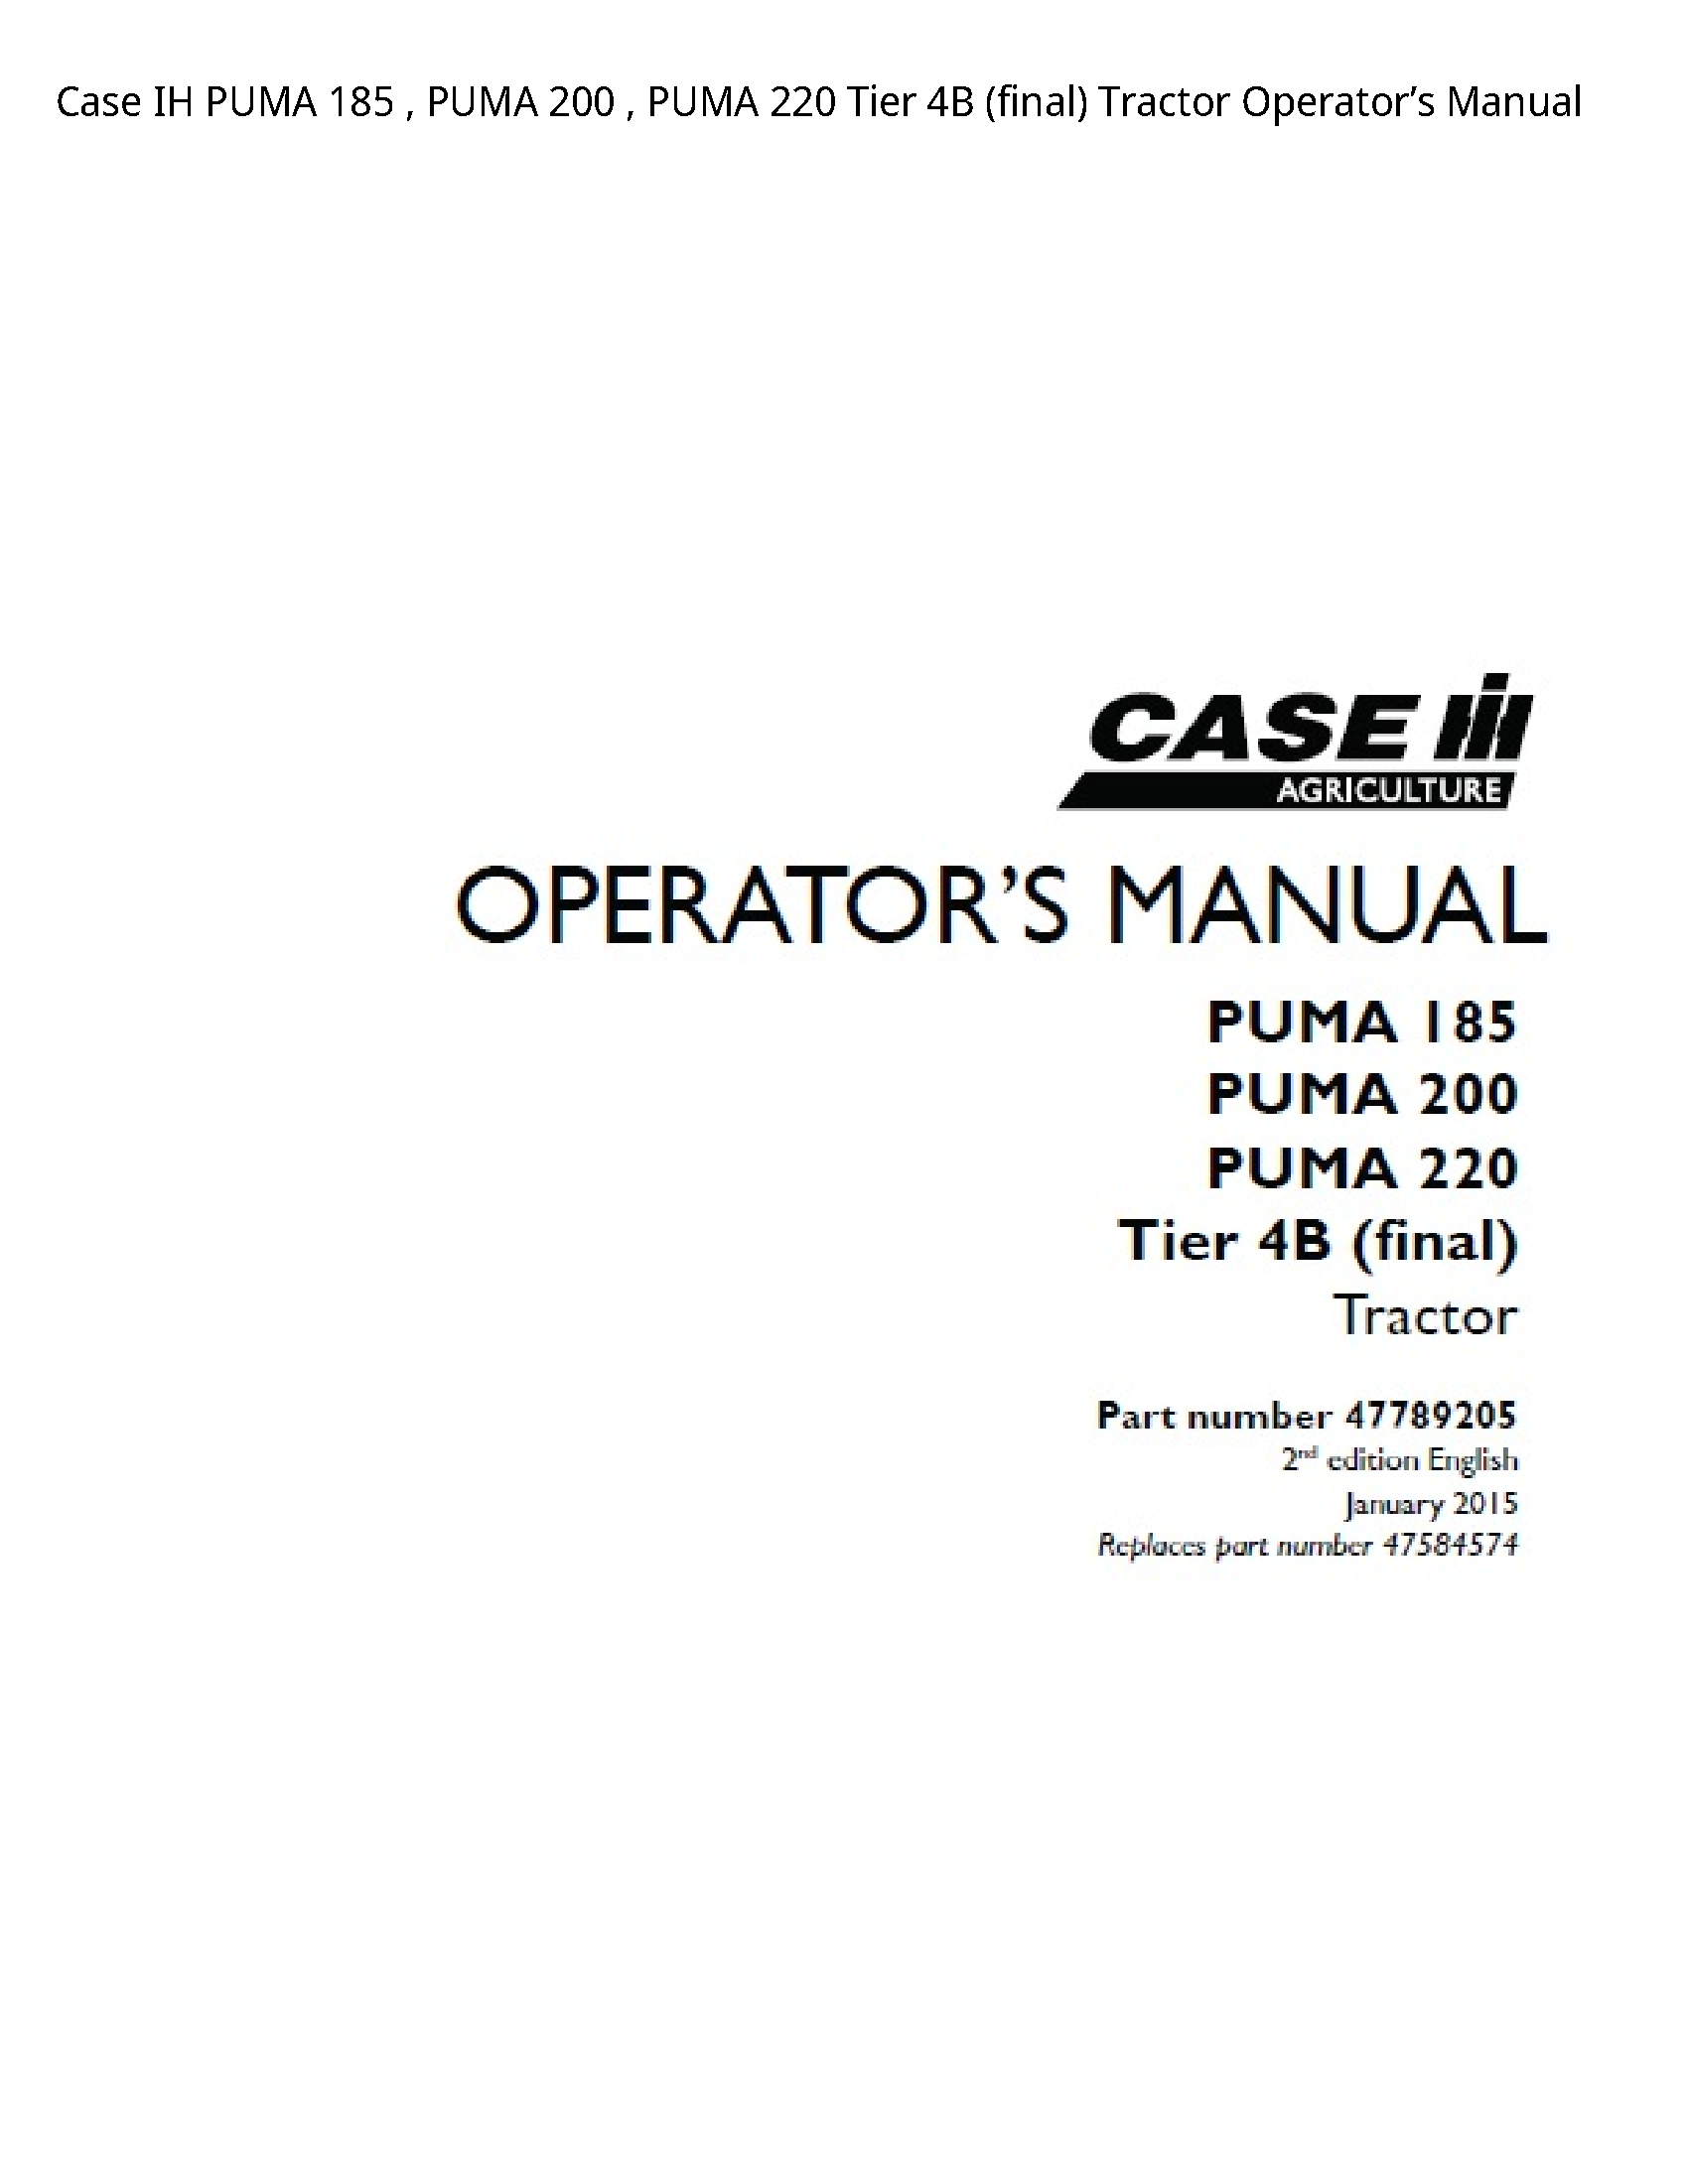 Case/Case IH 185 IH PUMA PUMA PUMA Tier (final) Tractor Operator’s manual